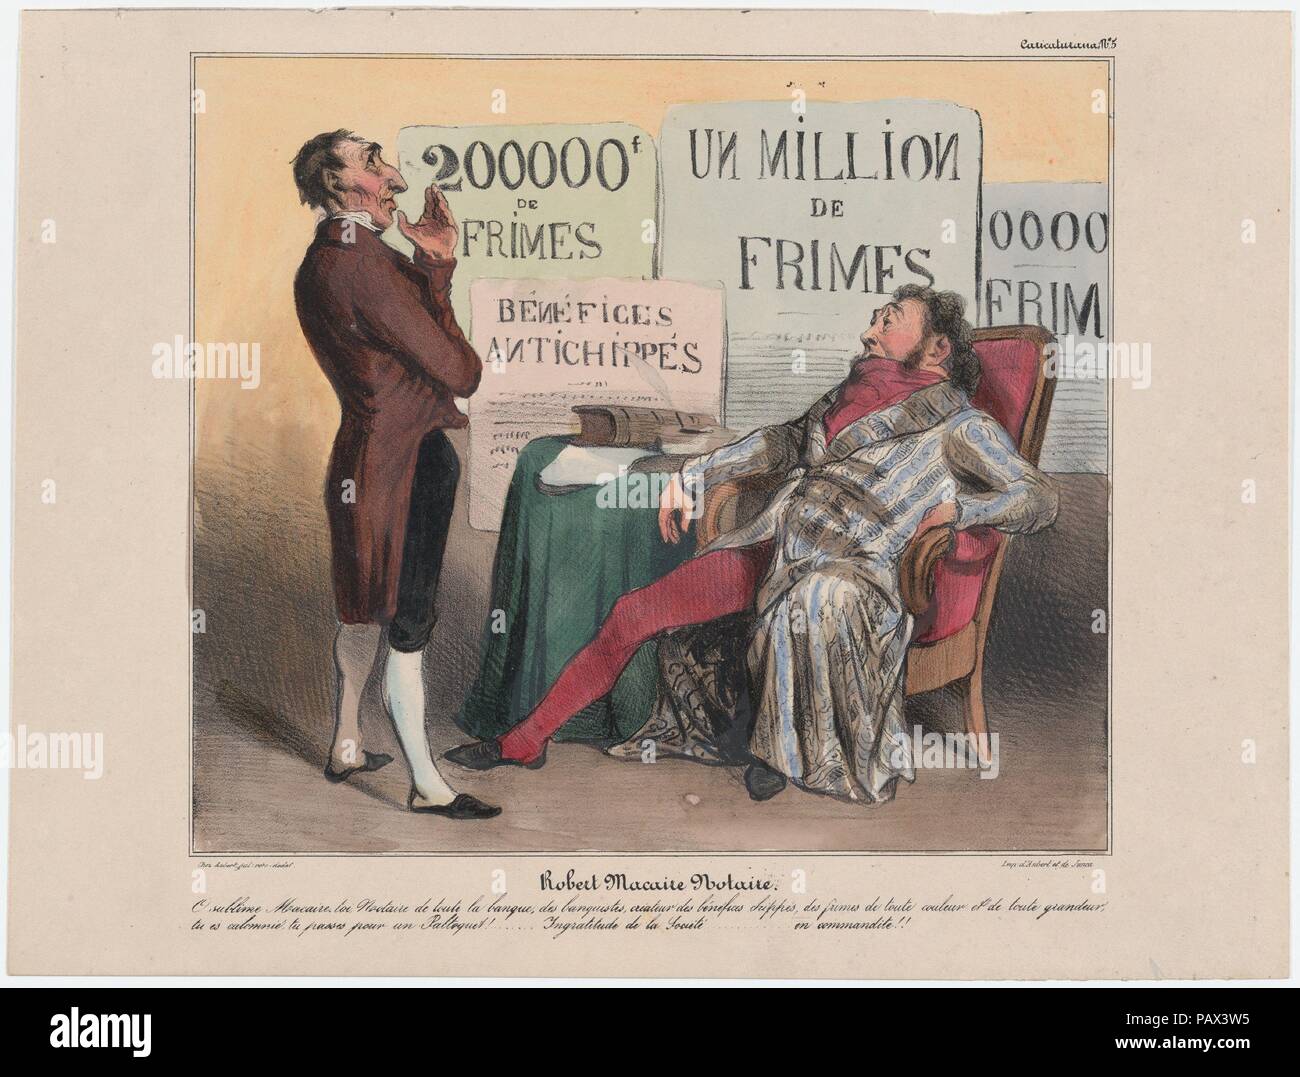 La piastra 5: Robert Macaire come notaio, da 'Caricaturana", pubblicato in Les Robert Macaires. Artista: Honoré Daumier (francese, Marsiglia 1808-1879 Valmondois). Autore: Charles Philipon (francese, Lione 1800-1862 Paris). Dimensioni: Immagine: 8 5/16 × 9 13/16 in. (21,1 × 24,9 cm) foglio: 10 3/16 × 13 3/8 in. (25,8 × 34 cm). Stampante: Aubert et Cie; Junca. Serie/Portfolio: 'Caricaturana'. Data: 1838. O sublime Macaire! Si, un notaio per tutta la banca per i banchieri, inventore del pizzicato profitto, delle tangenti di tutte le sfumature e dimensioni, sei calunniato, sei preso per una canaglia!... Ingratitudine o Foto Stock